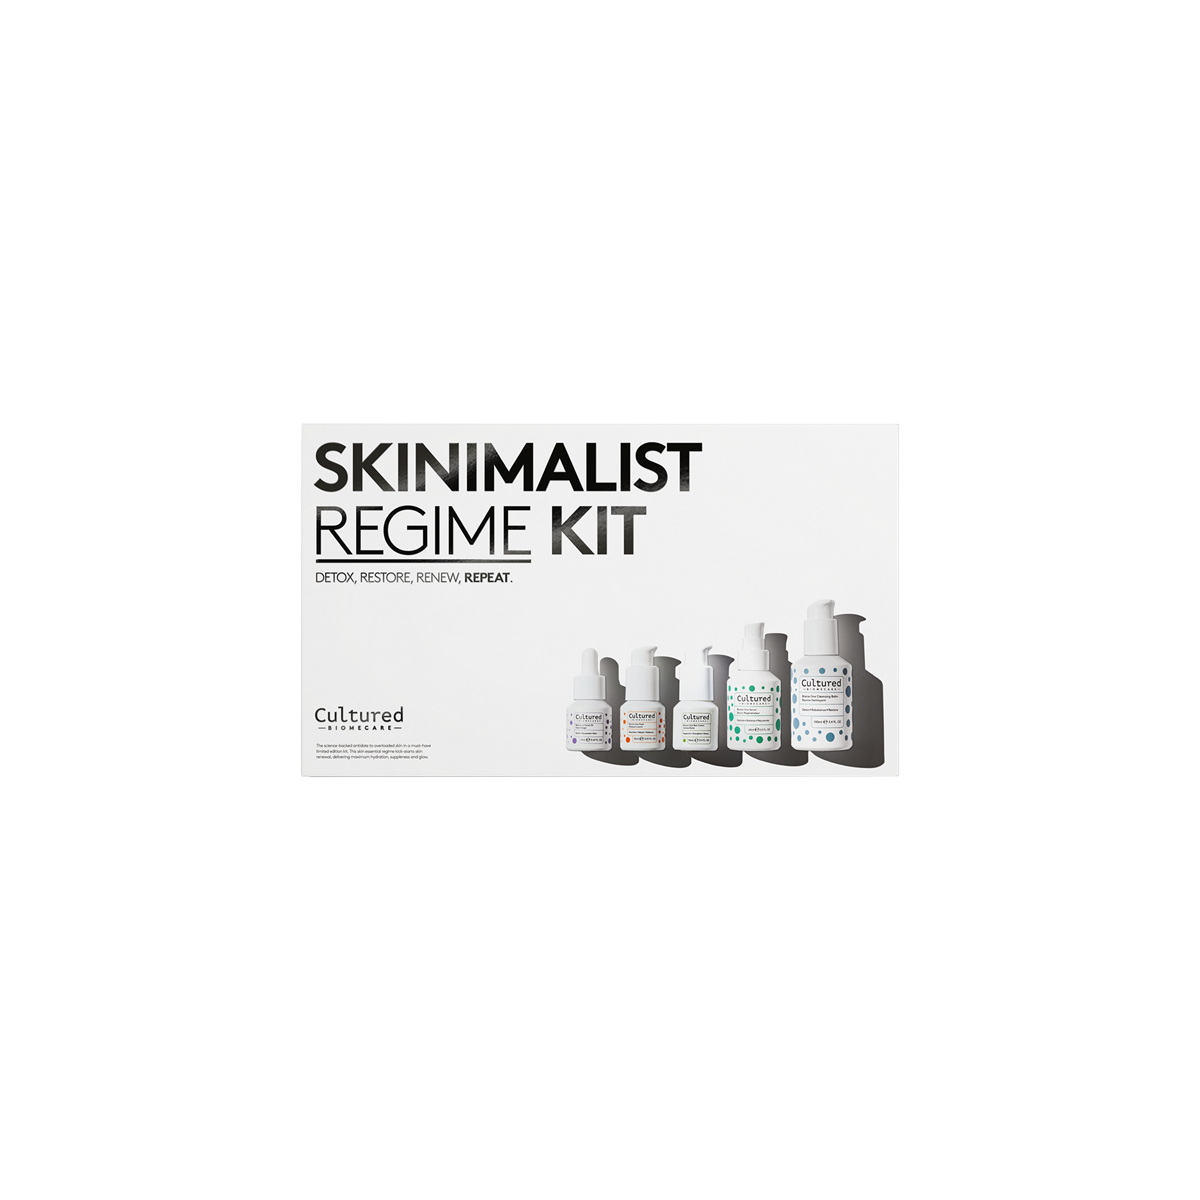 Cultured - Skinimalist Regime Kit